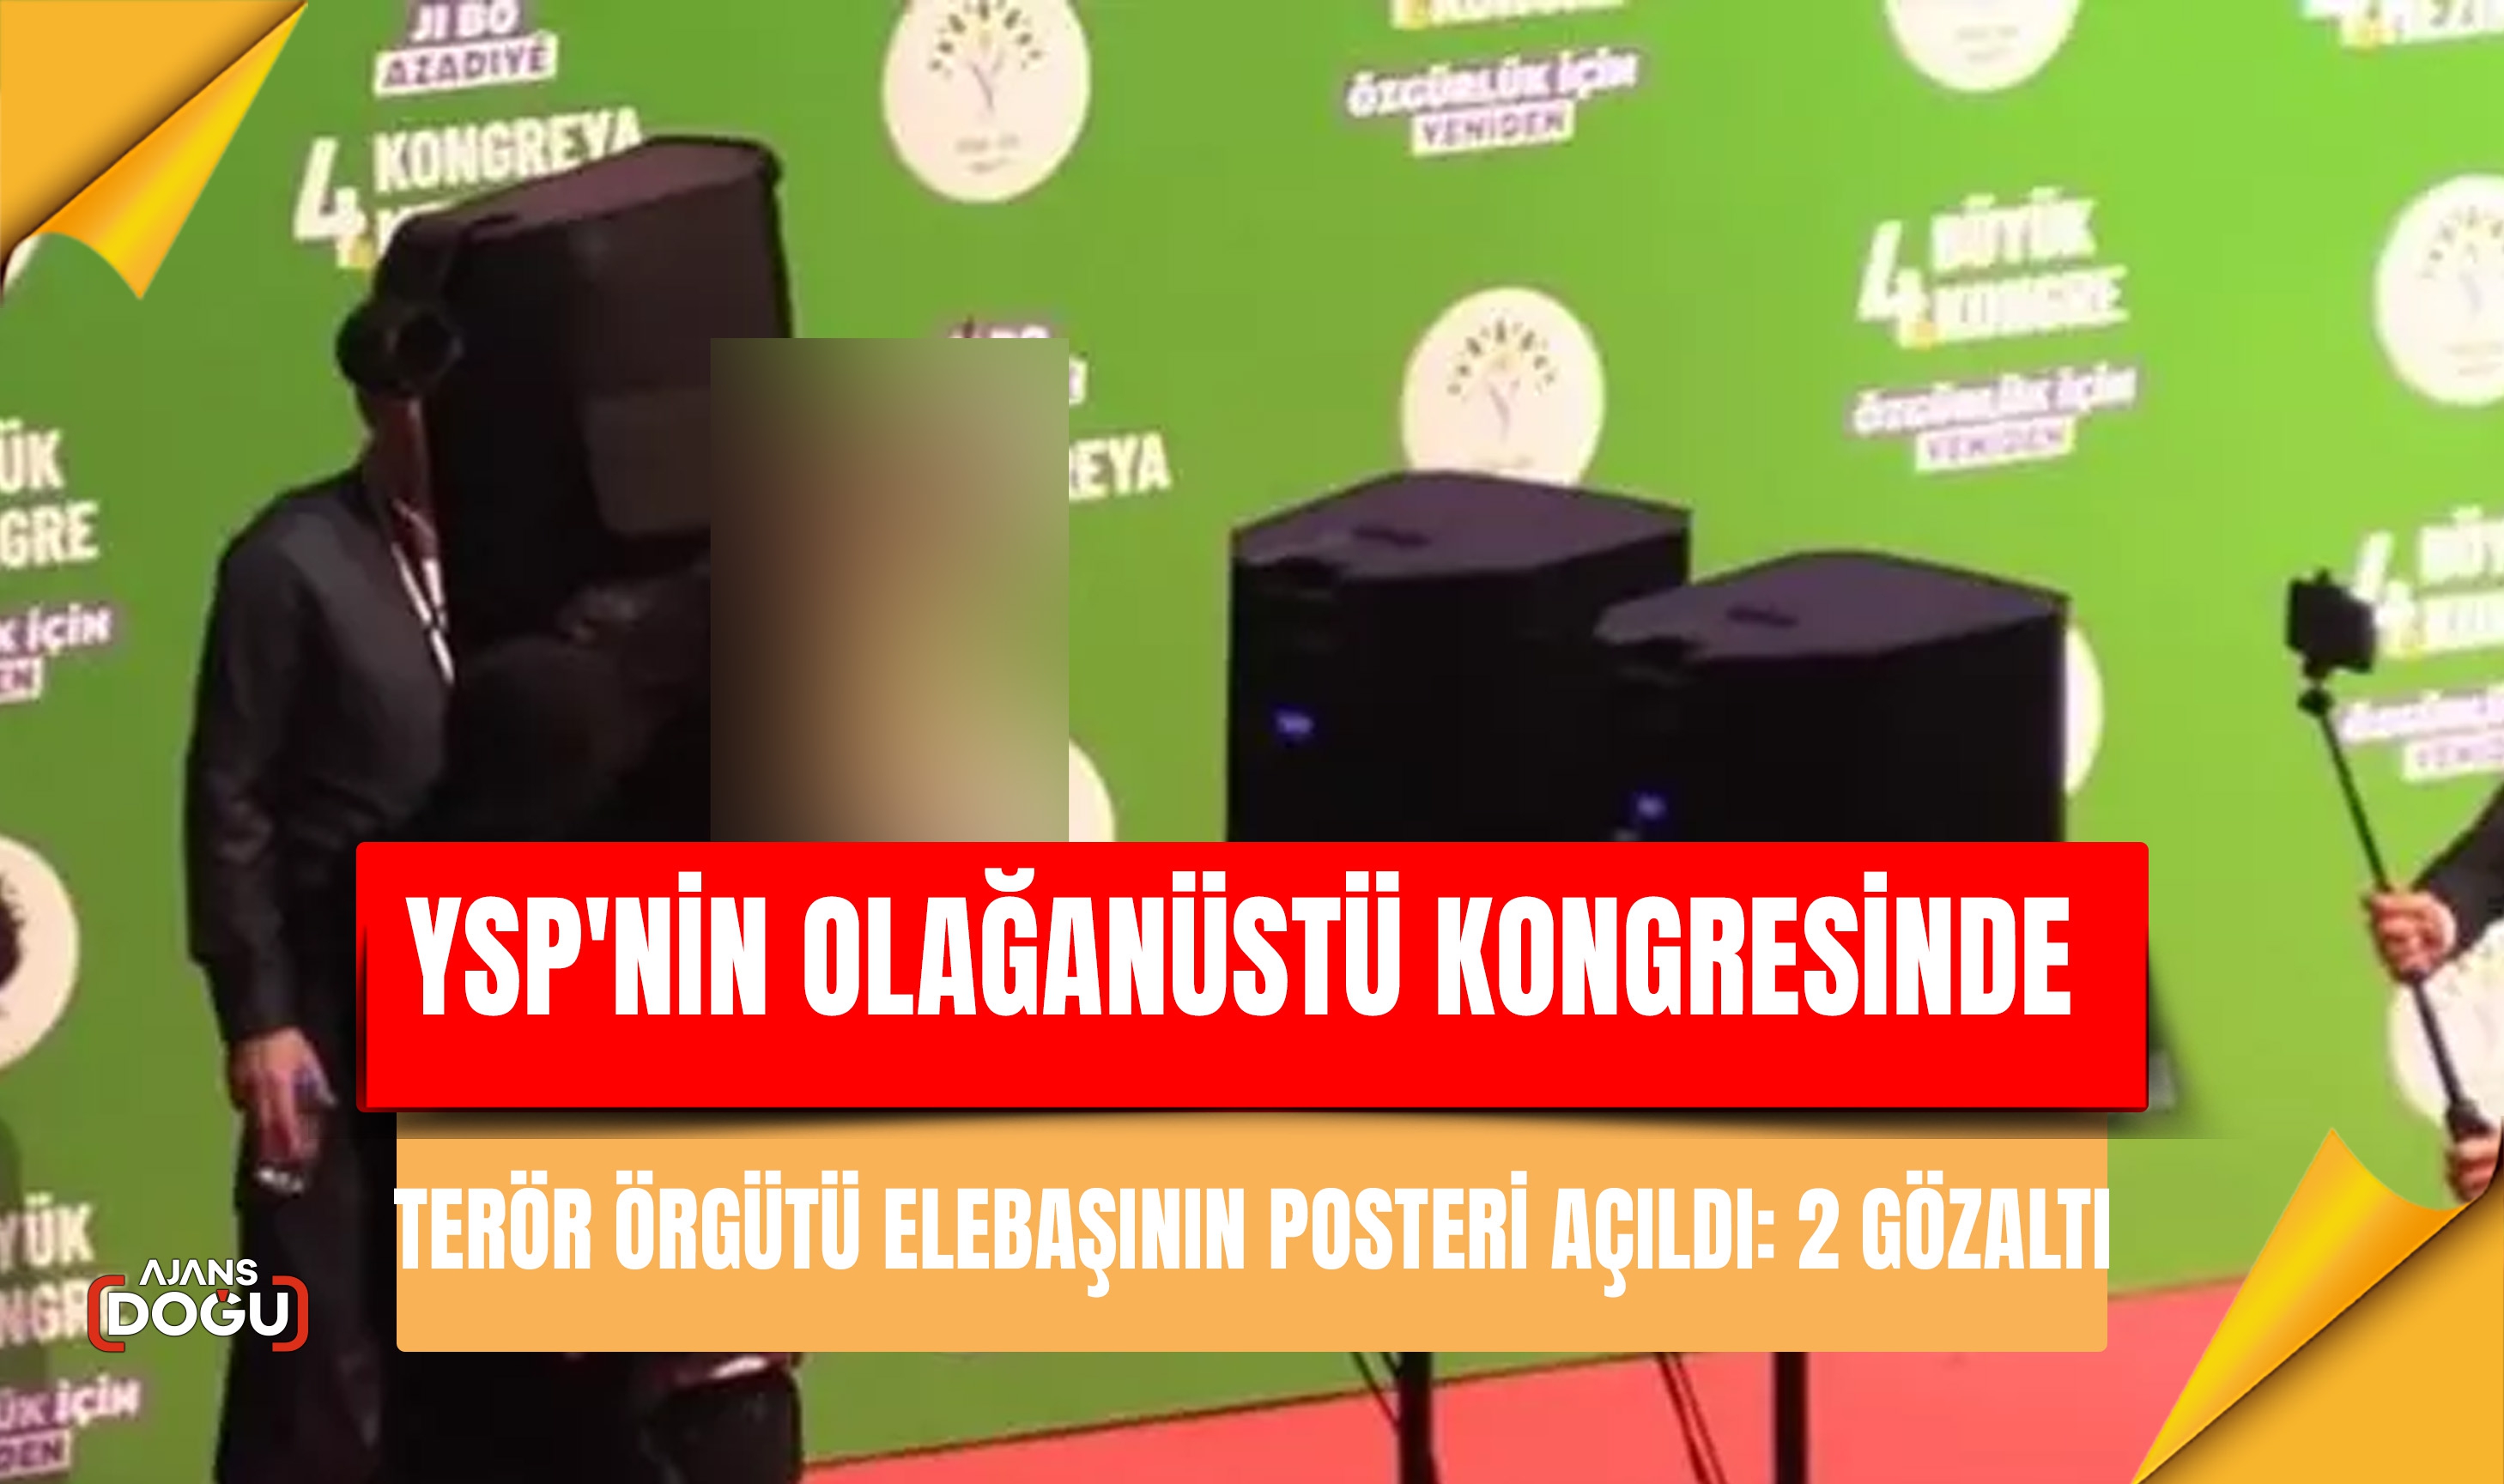 YSP'nin olağanüstü kongresinde terör örgütü elebaşının posteri açıldı: 2 gözaltı